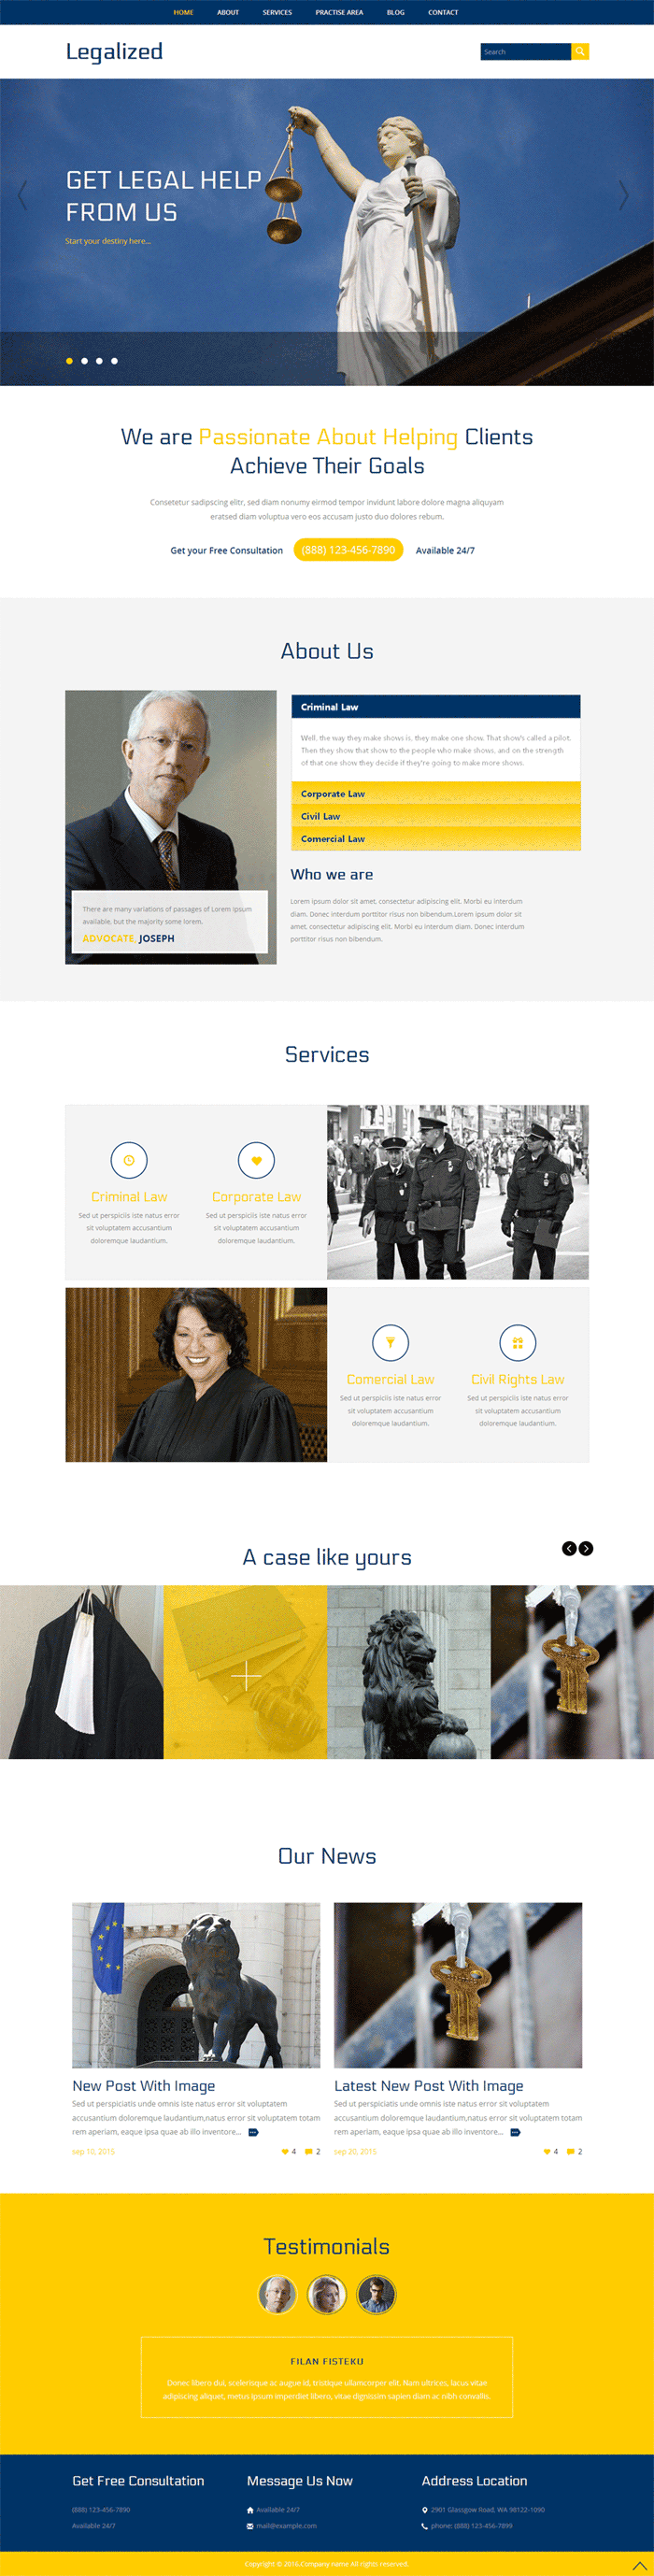 律师法院网站欧美风格的模板下载